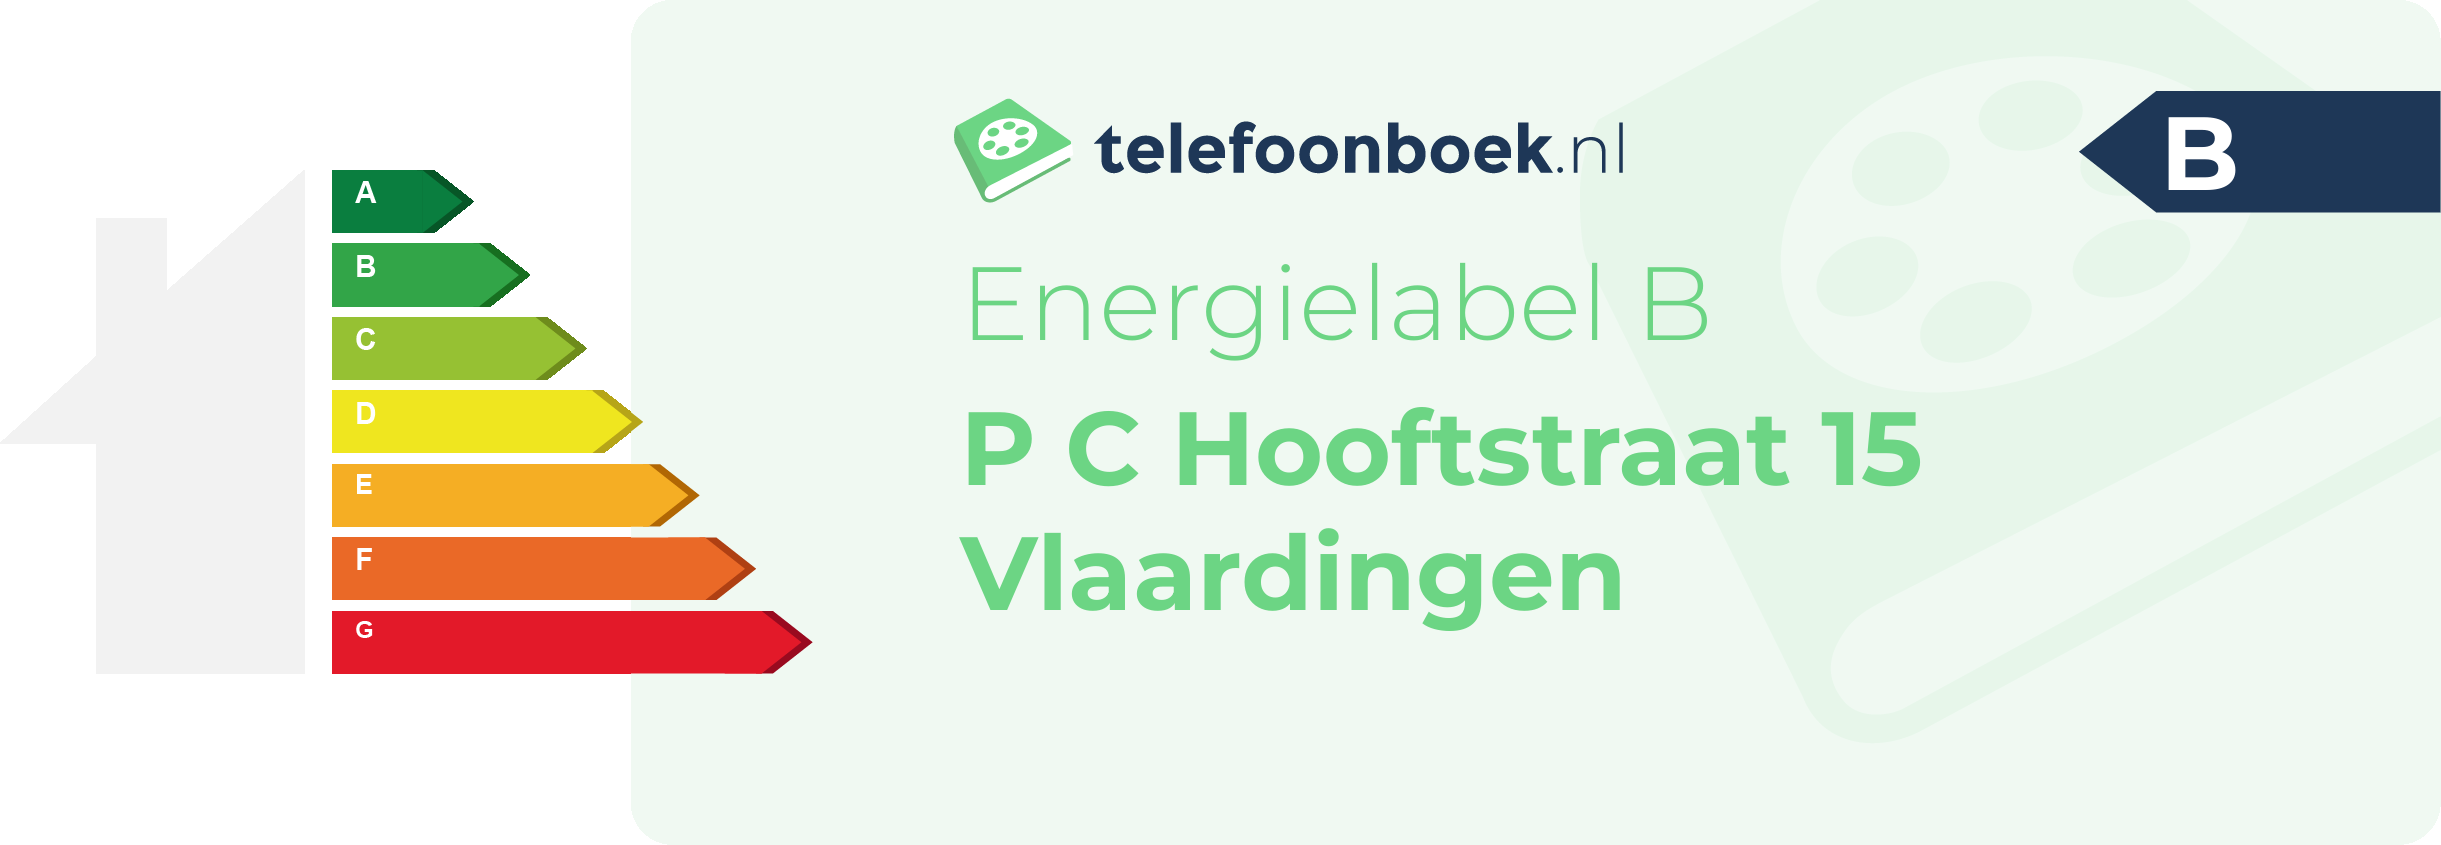 Energielabel P C Hooftstraat 15 Vlaardingen